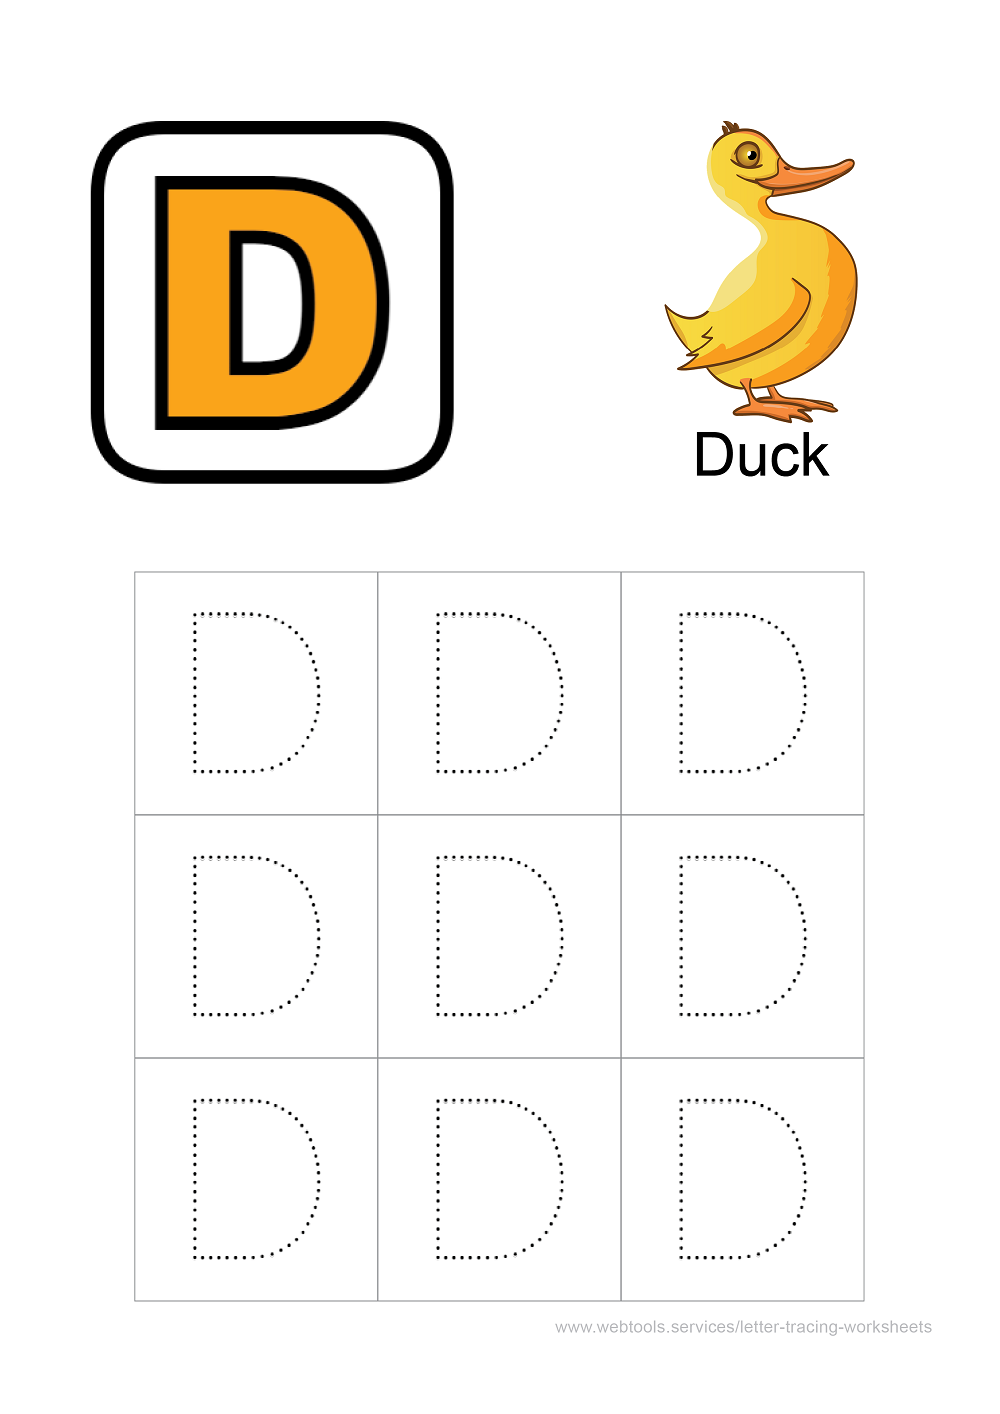 Webtools - English Alphabet 'D' Tracing Sheets